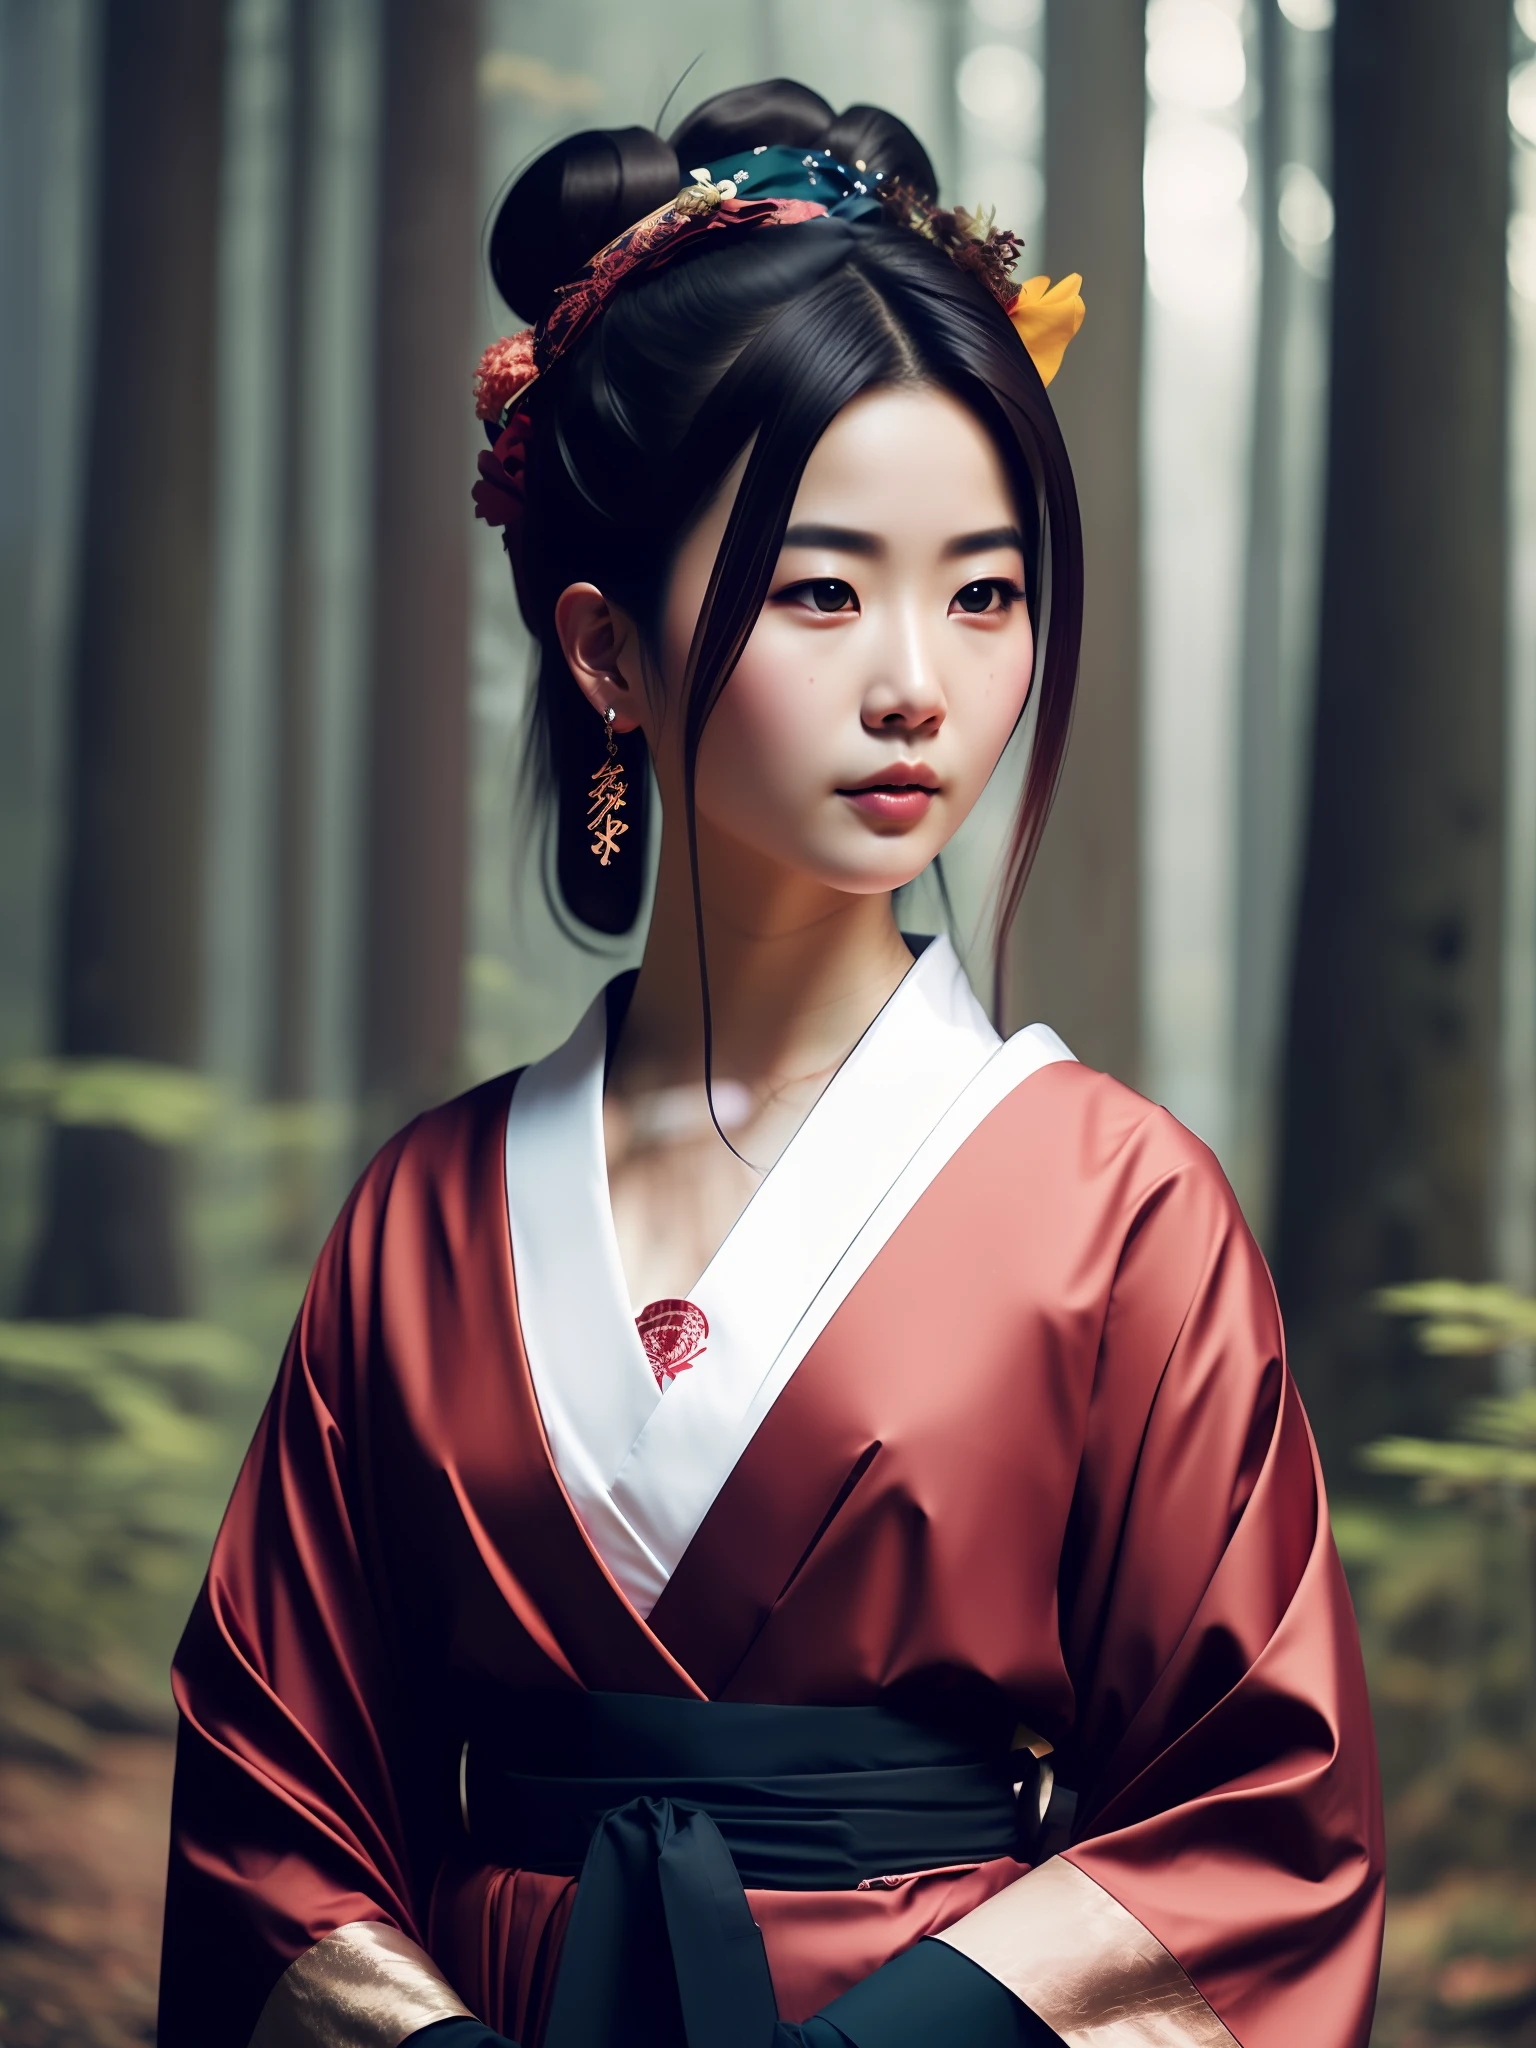 빌어먹을_공상 과학_v2, 젊고 아름다운 일본 게이샤의 초상화, 연기가 자욱한 숲 앞에서, 풍부하고 화려한 옷과 일본 우산, 확대, 신비한 포즈와 태도. 빌어먹을_영화_v2